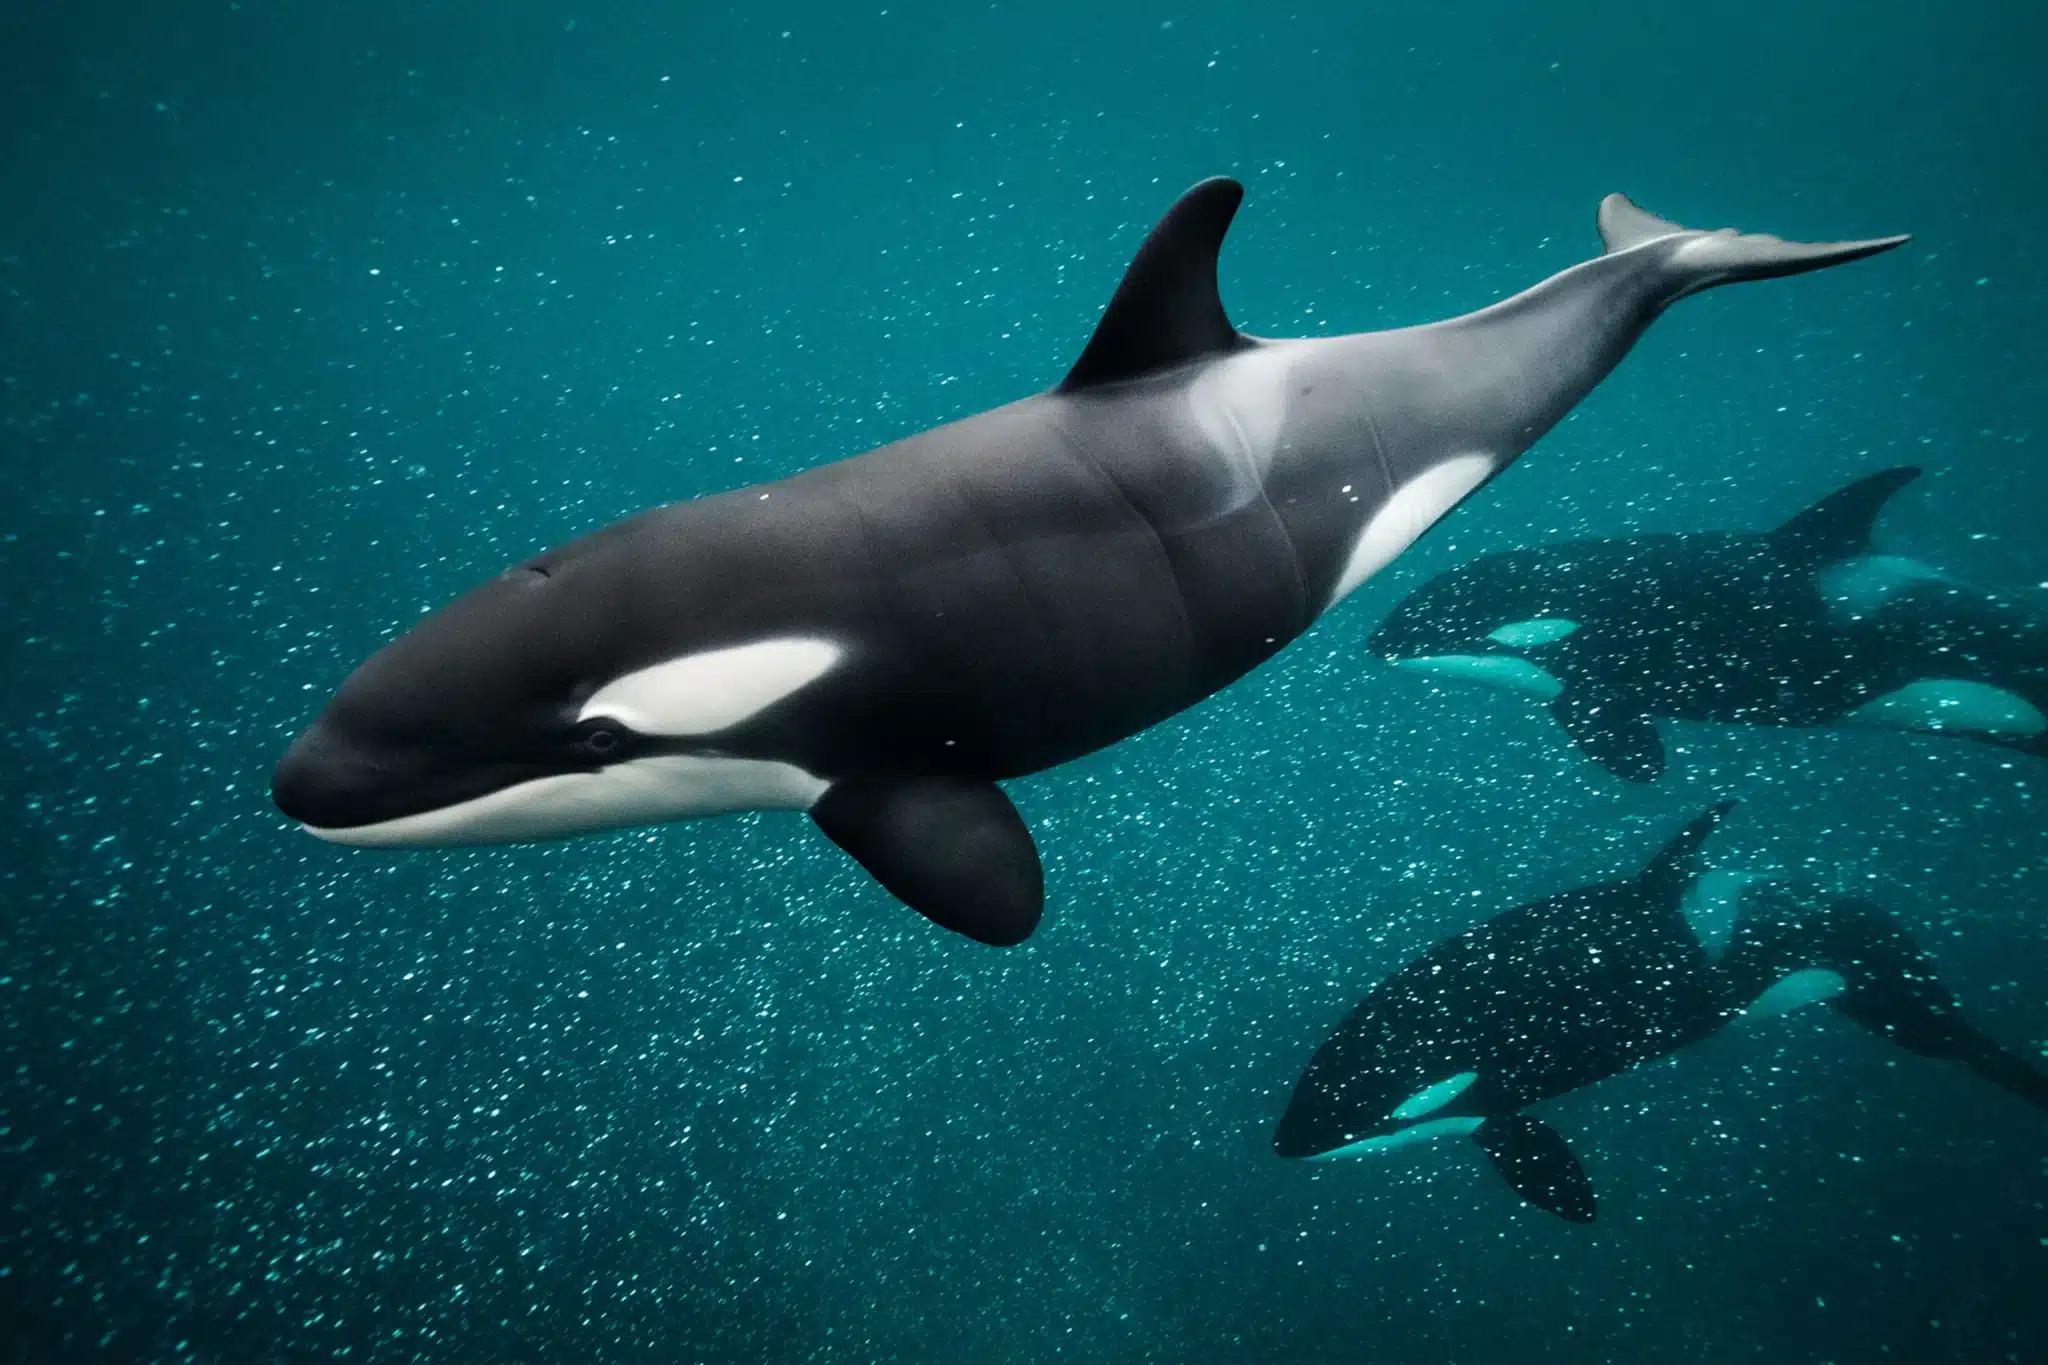 Orca (Killer Whale) .jpg